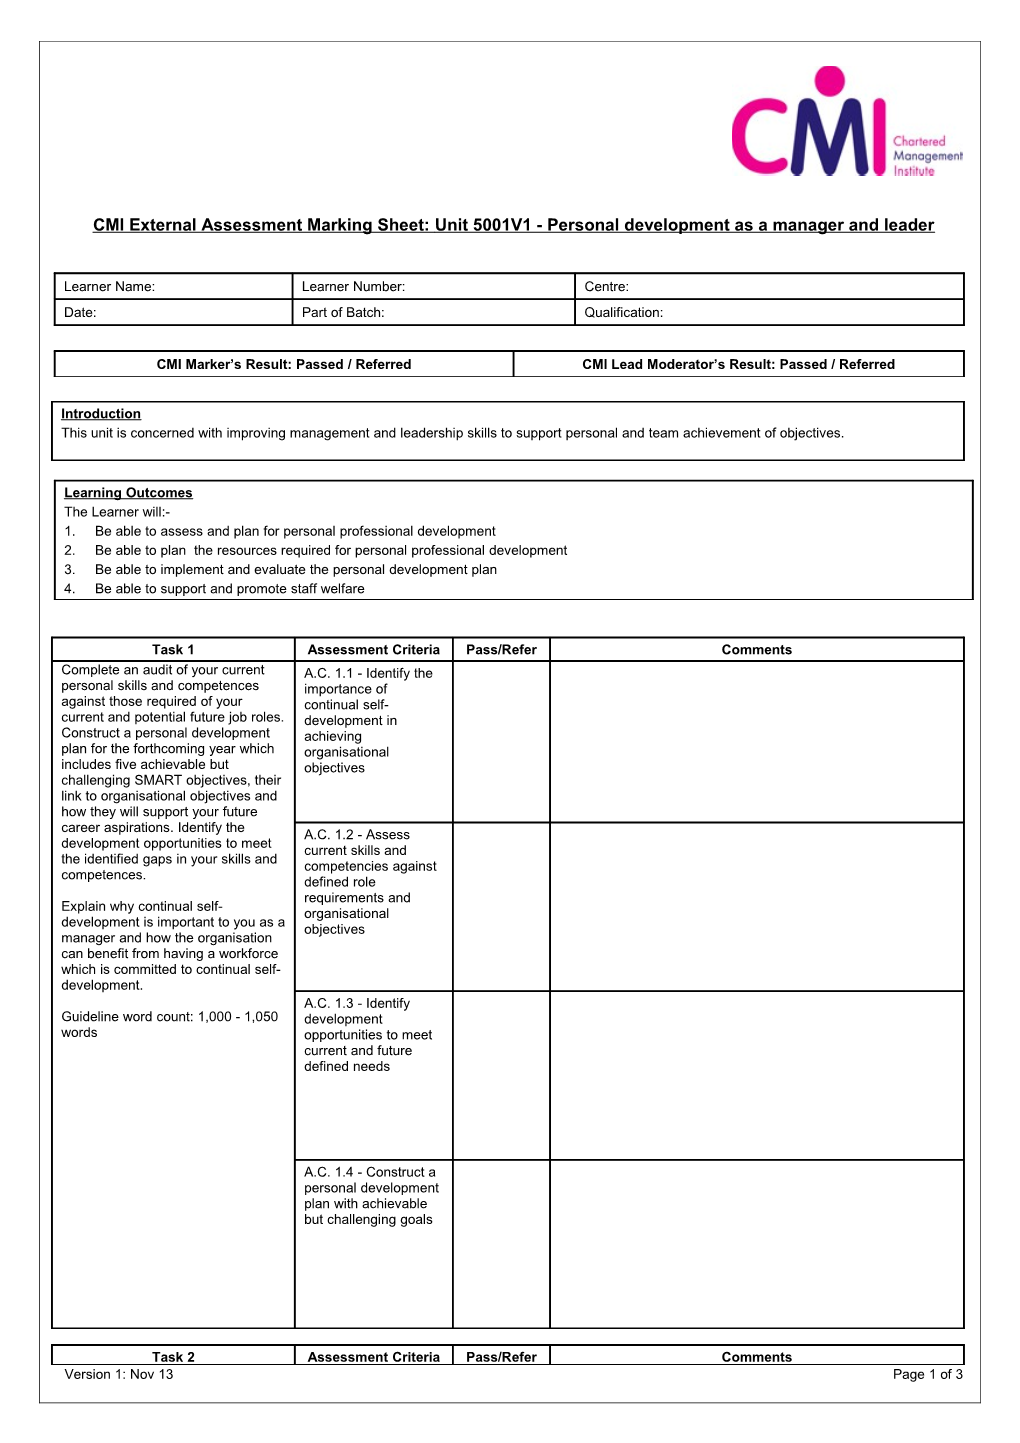 CMI External Assessment Marking Sheet:Unit 5001V1 - Personal Development As a Manager